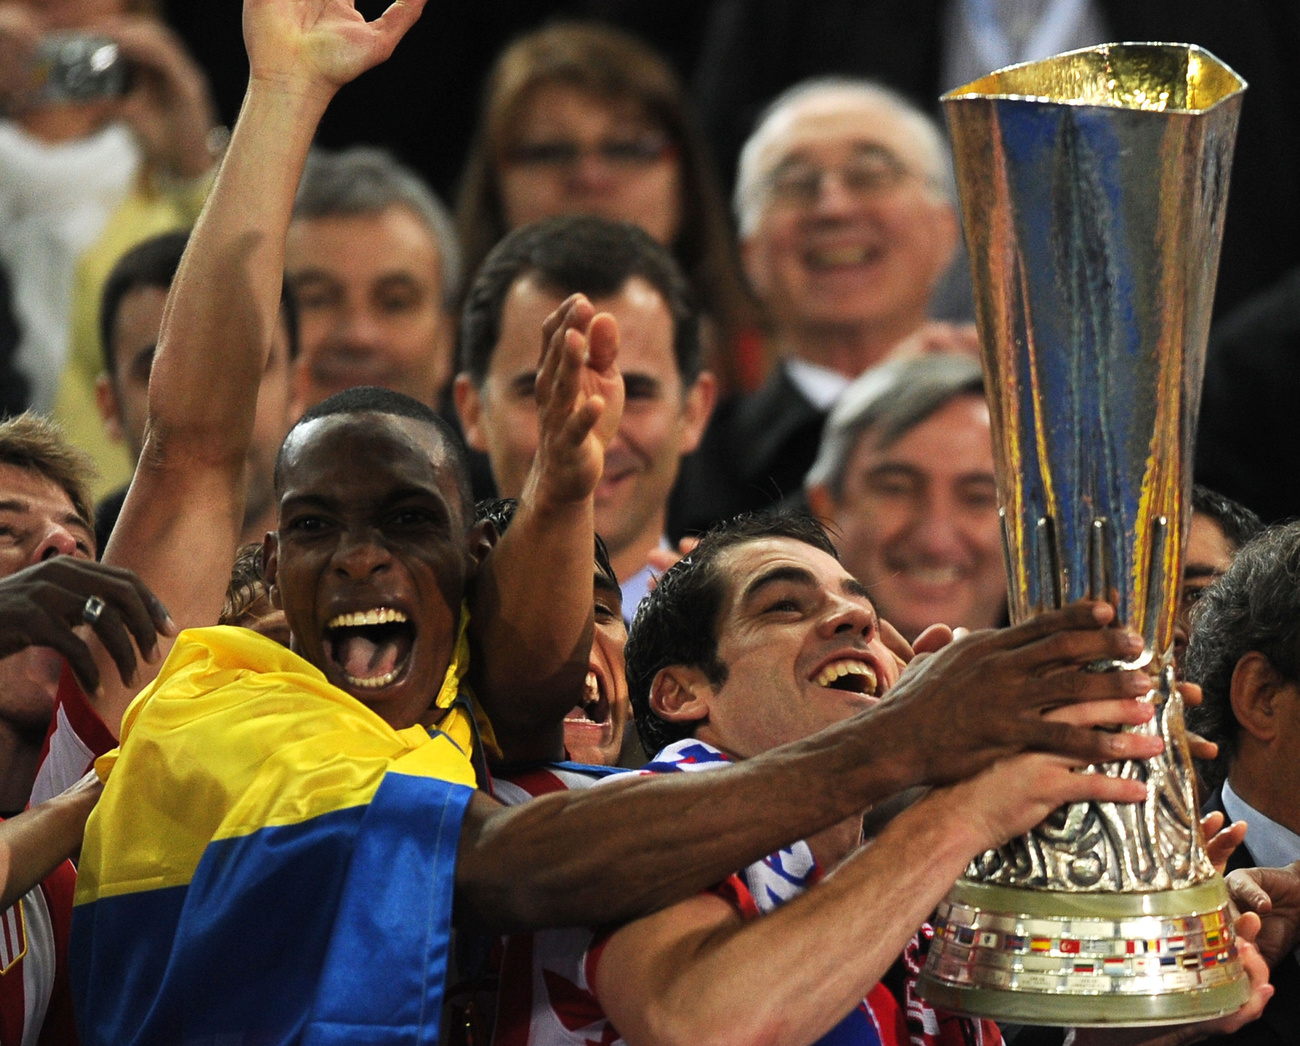 48 év után nyert európai kupát az Atlético Madrid.